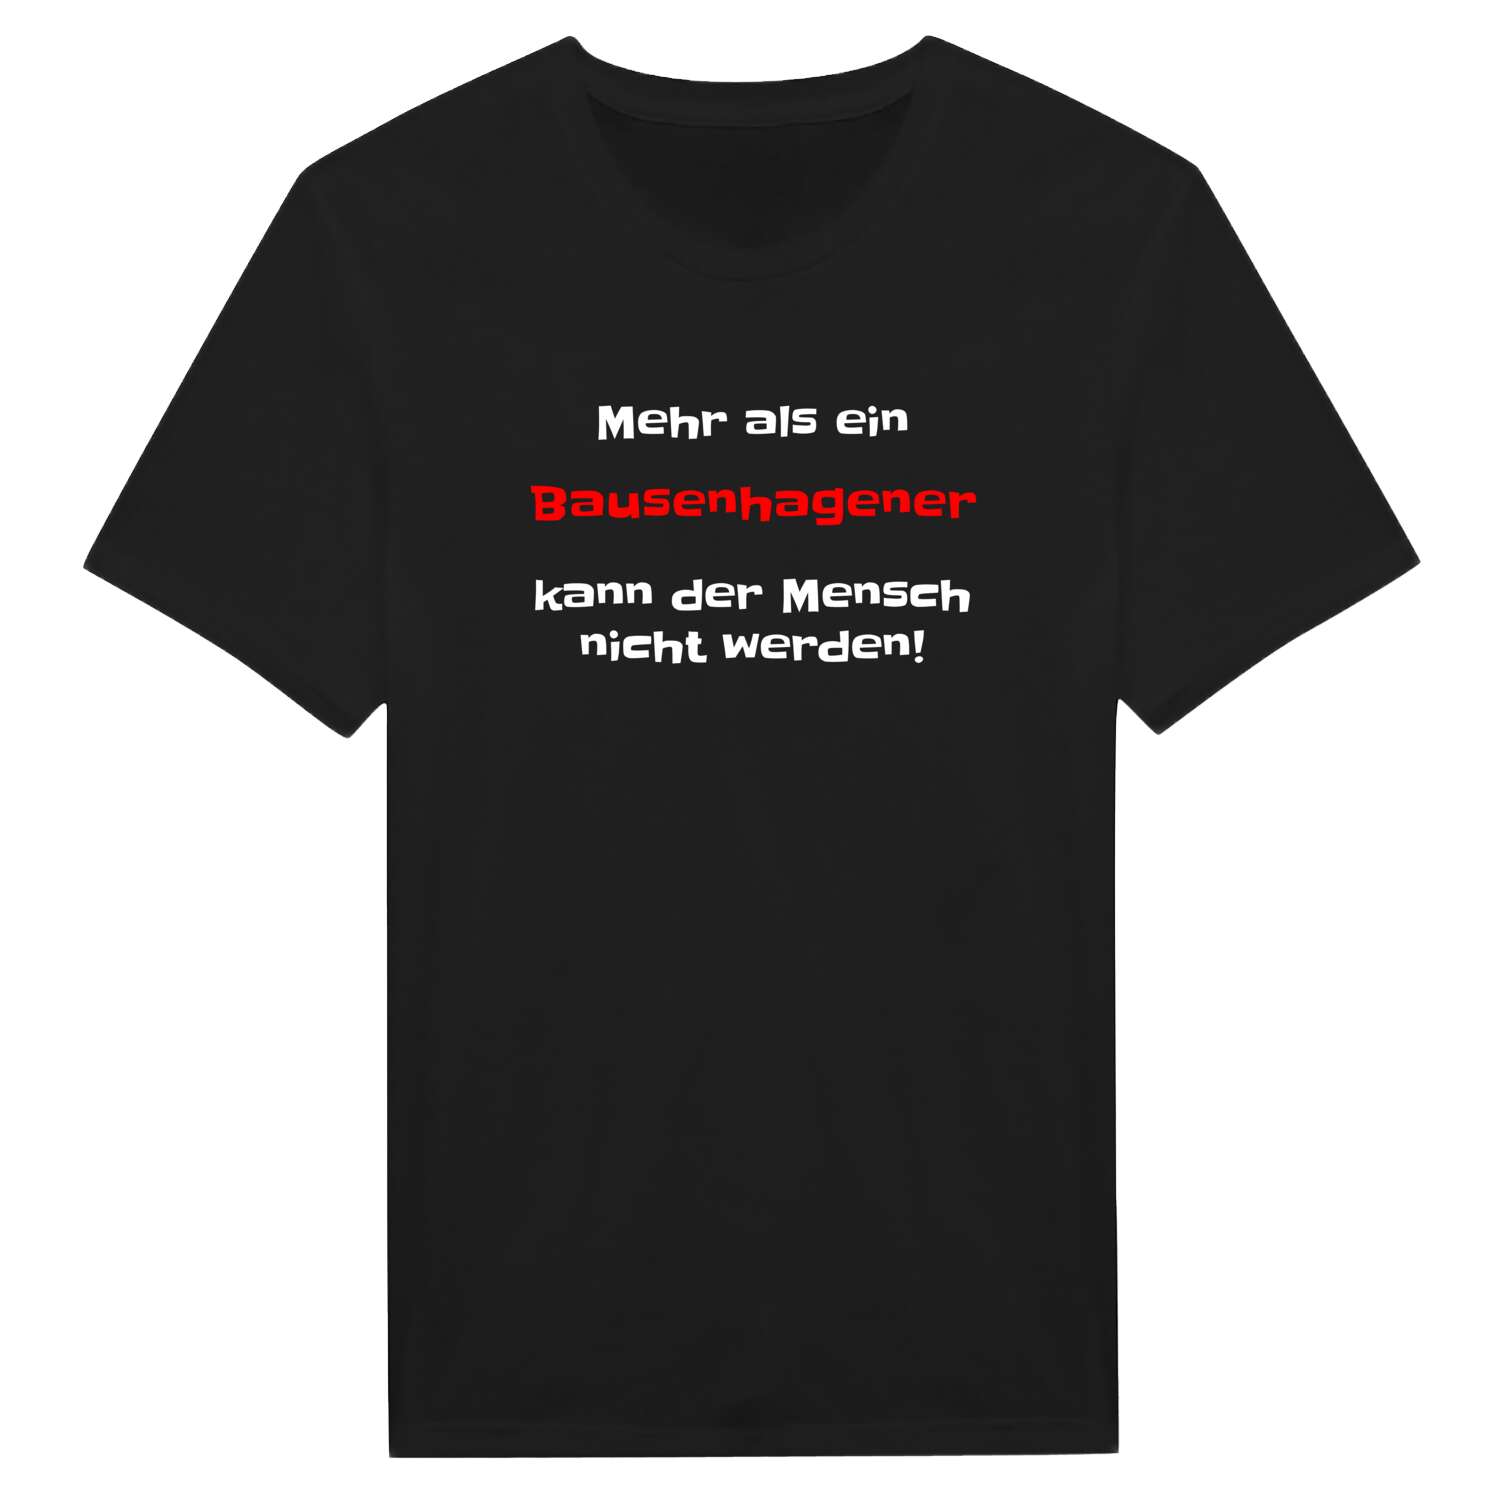 Bausenhagen T-Shirt »Mehr als ein«